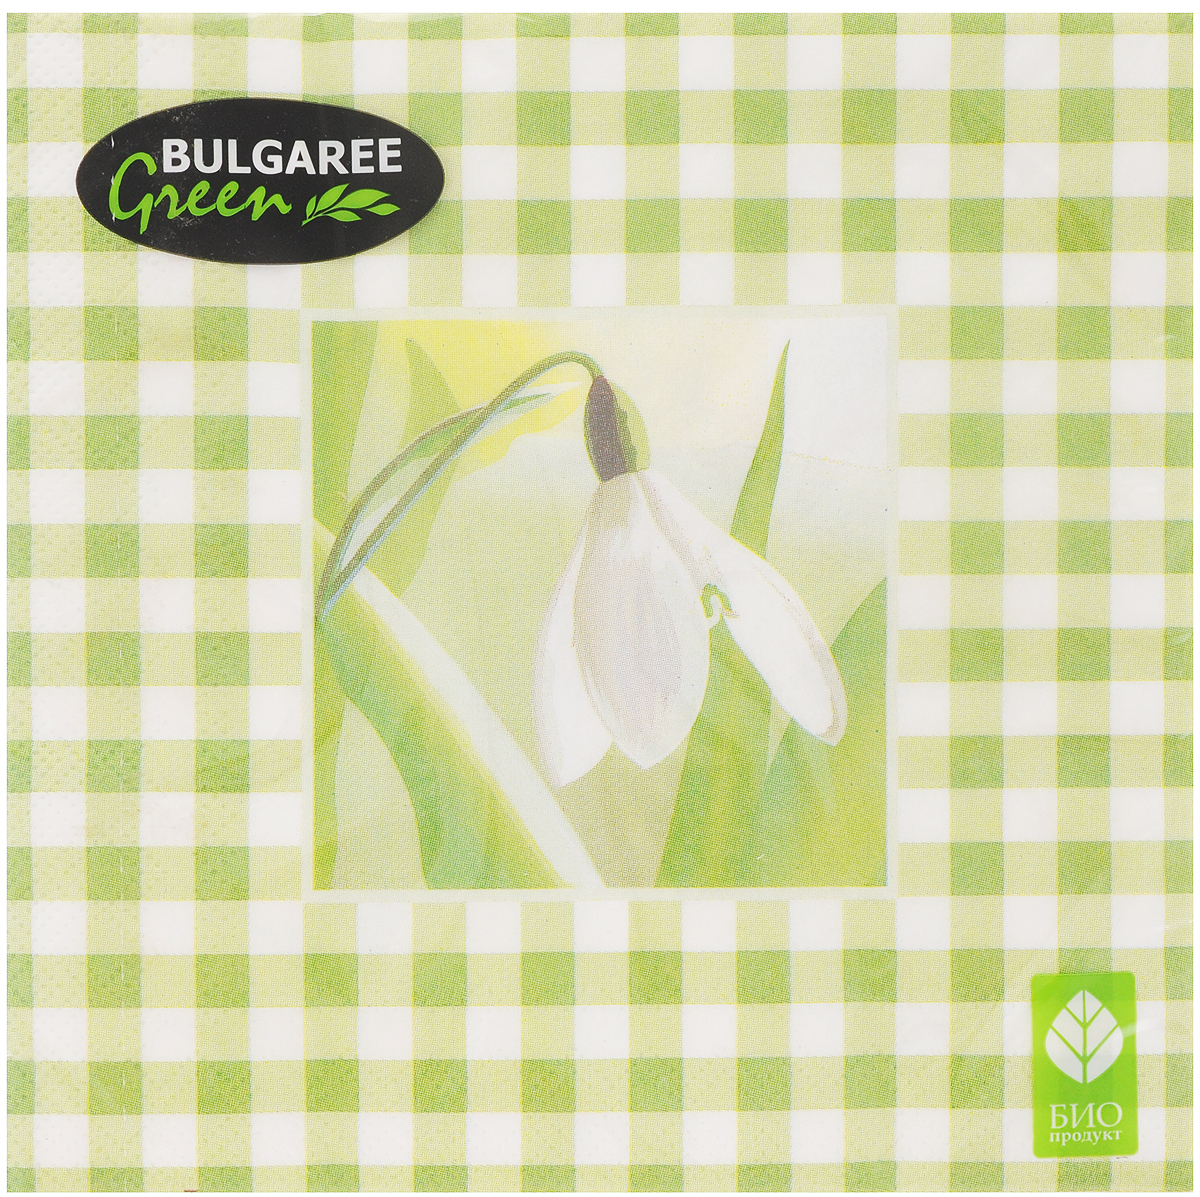   Bulgaree Green "", , 33  33 , 20 